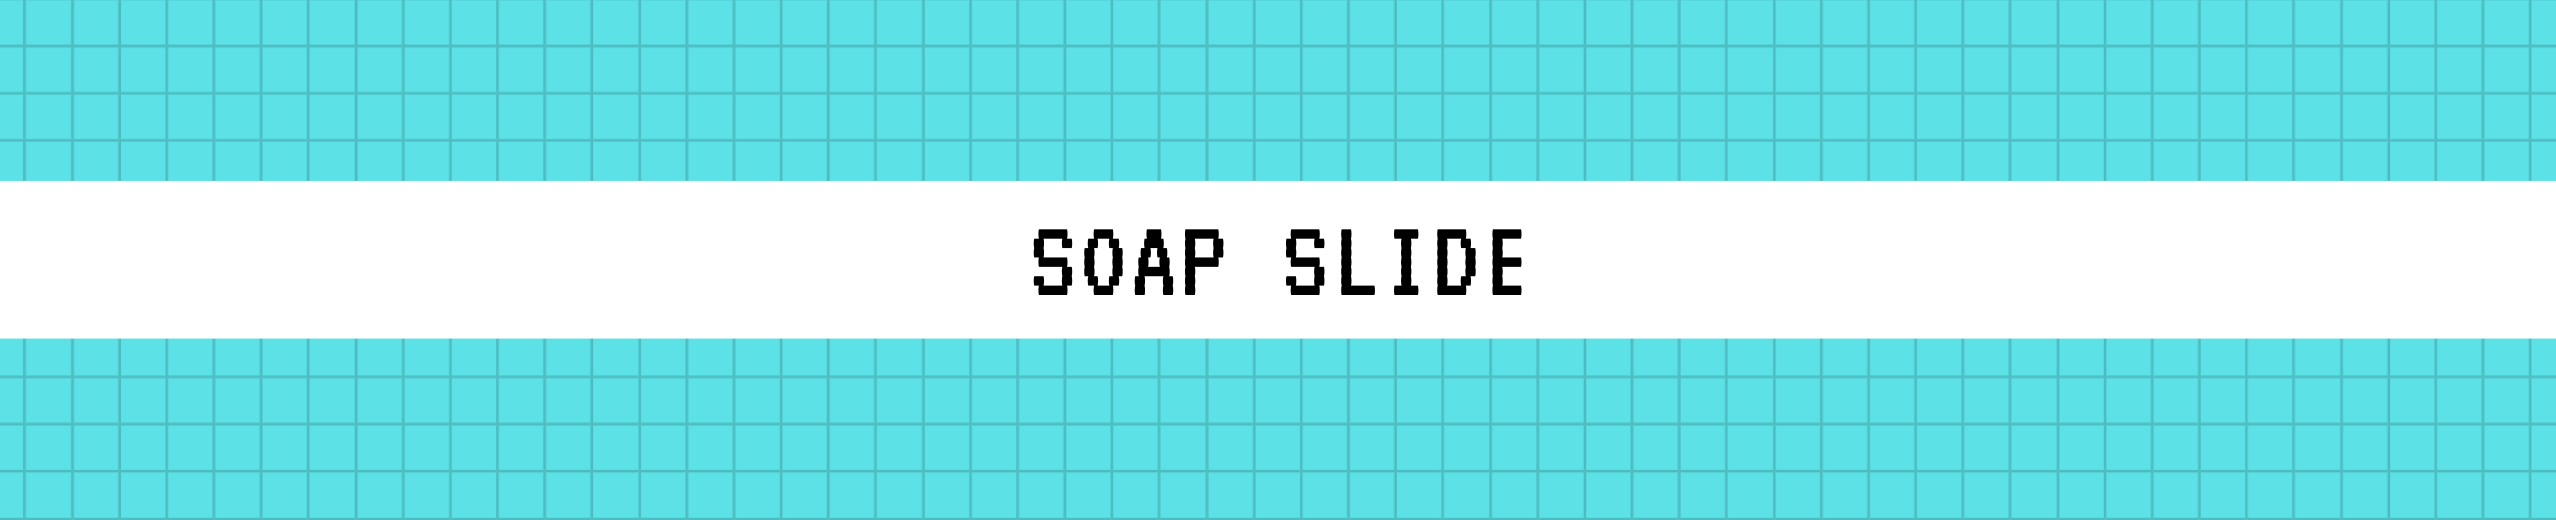 Soap Slide